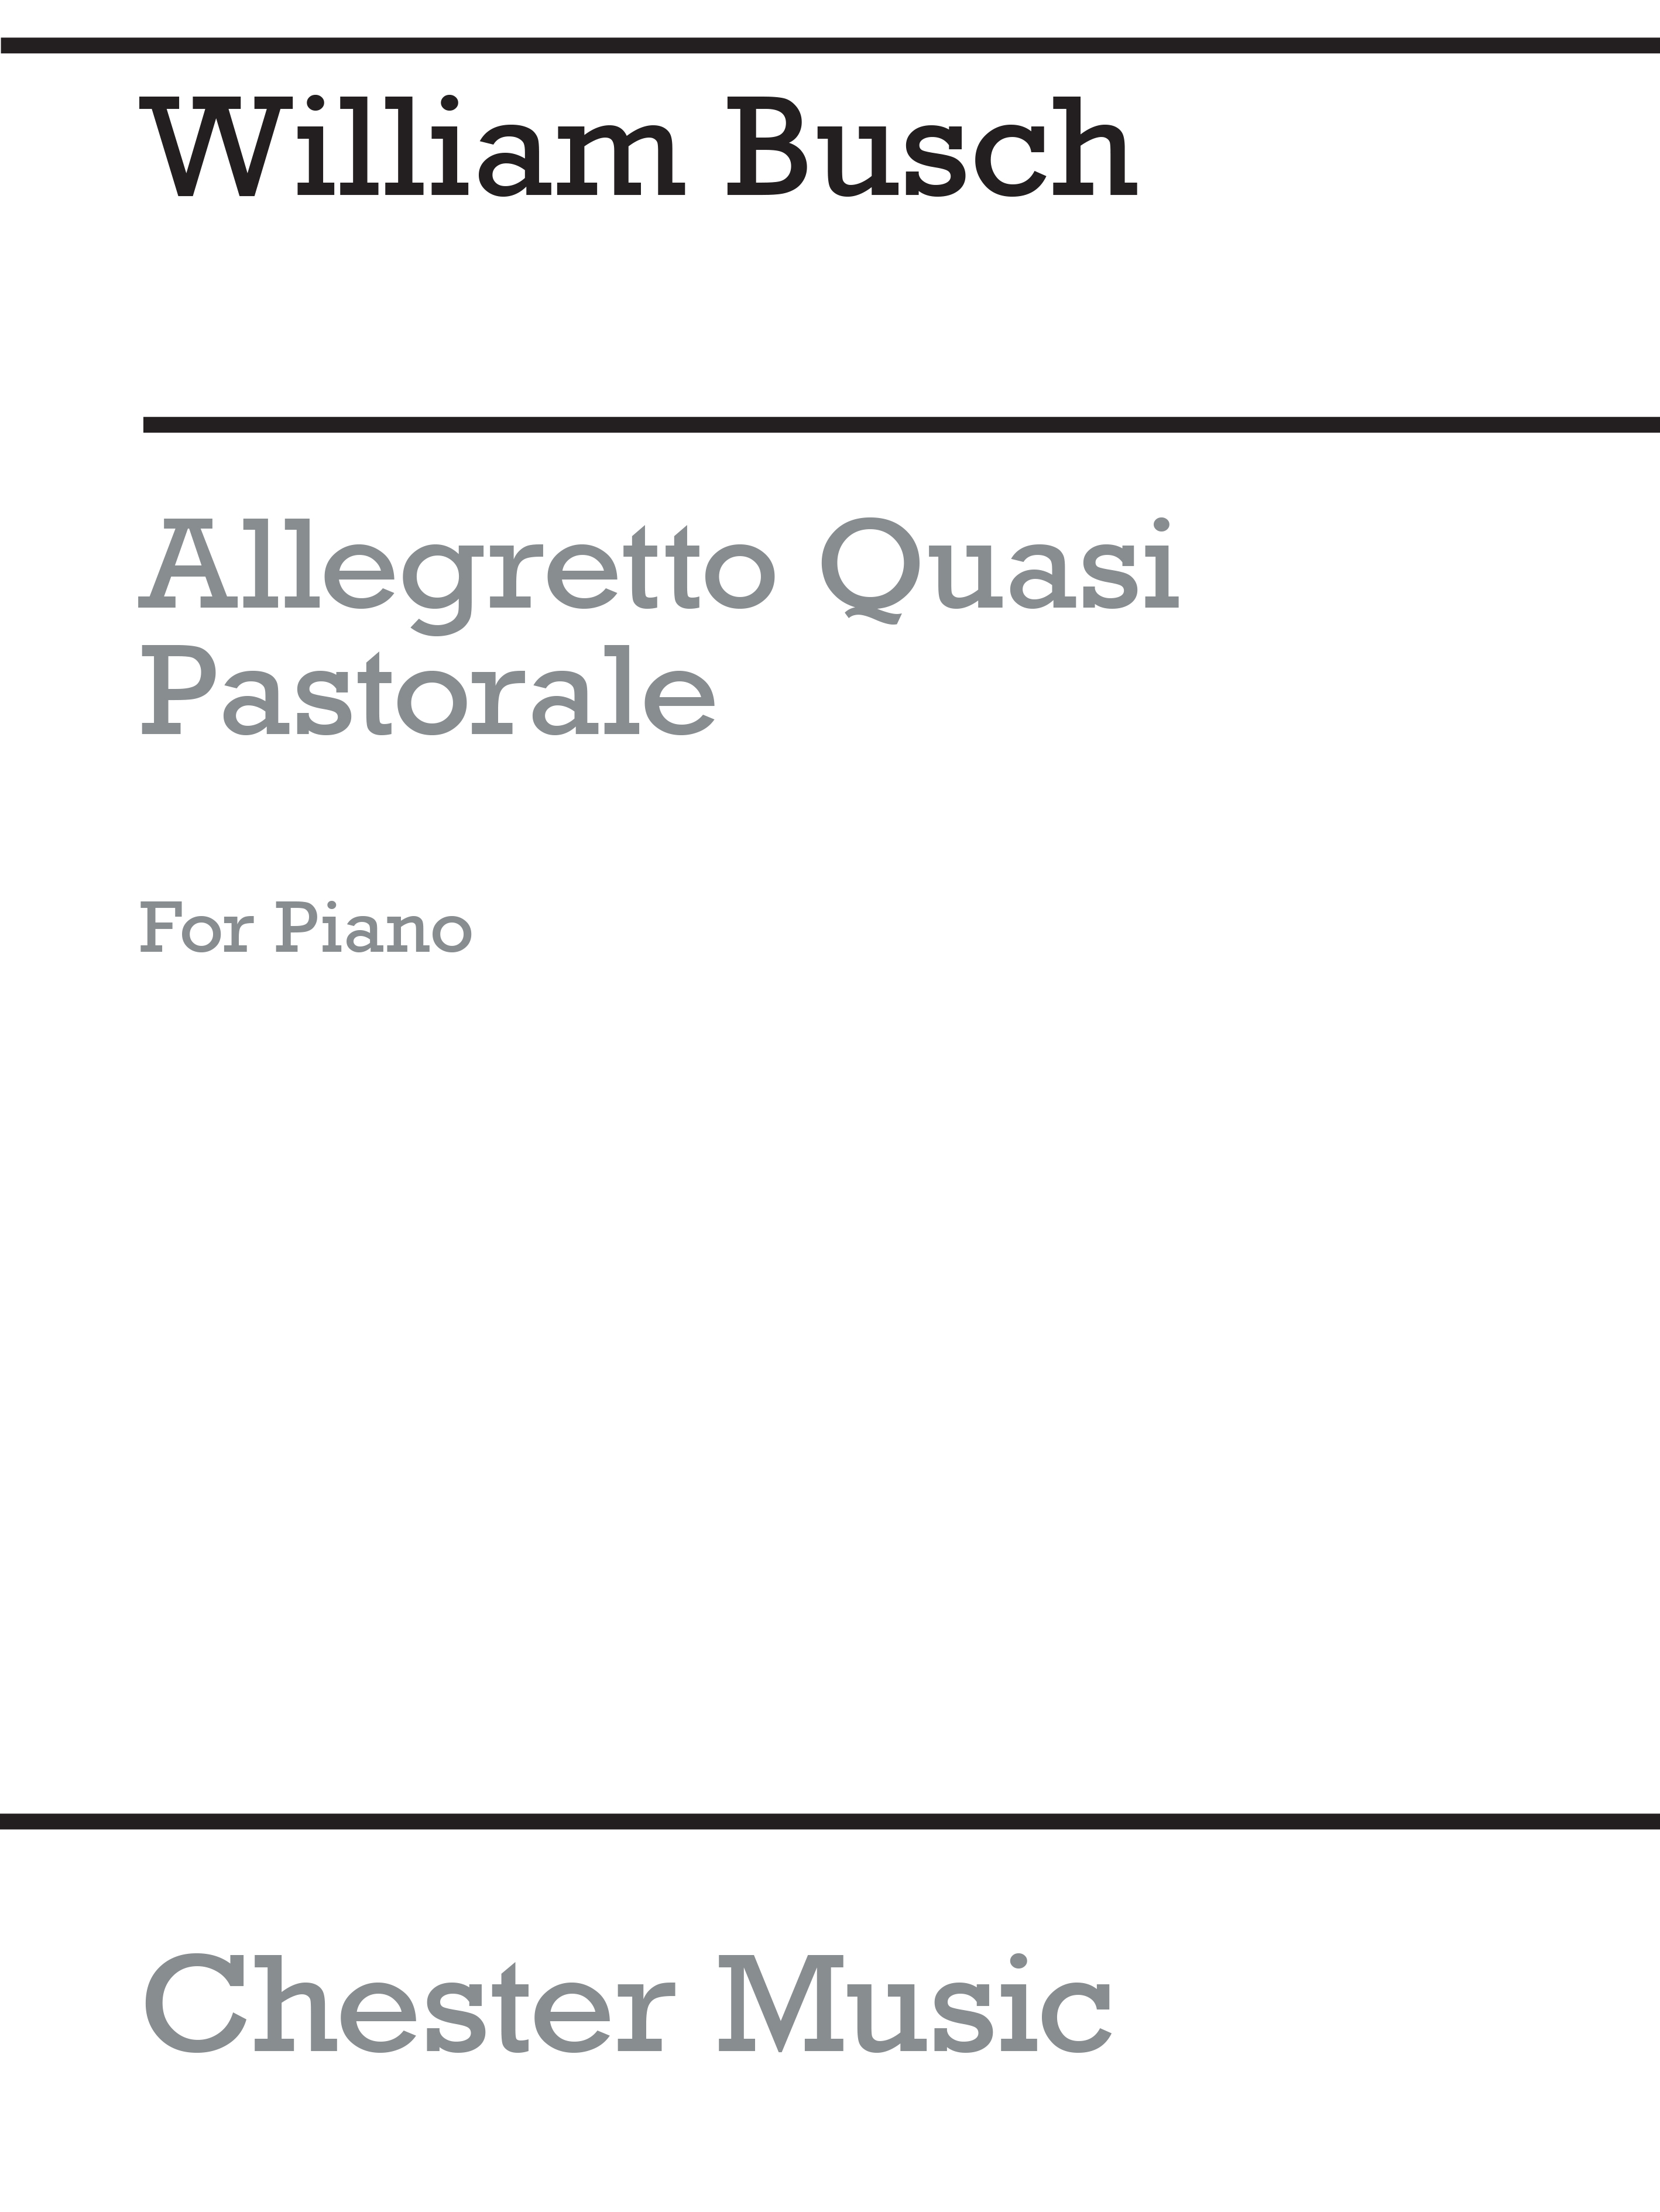 William Busch: Allegretto Quasi Pastorale: Piano: Parts